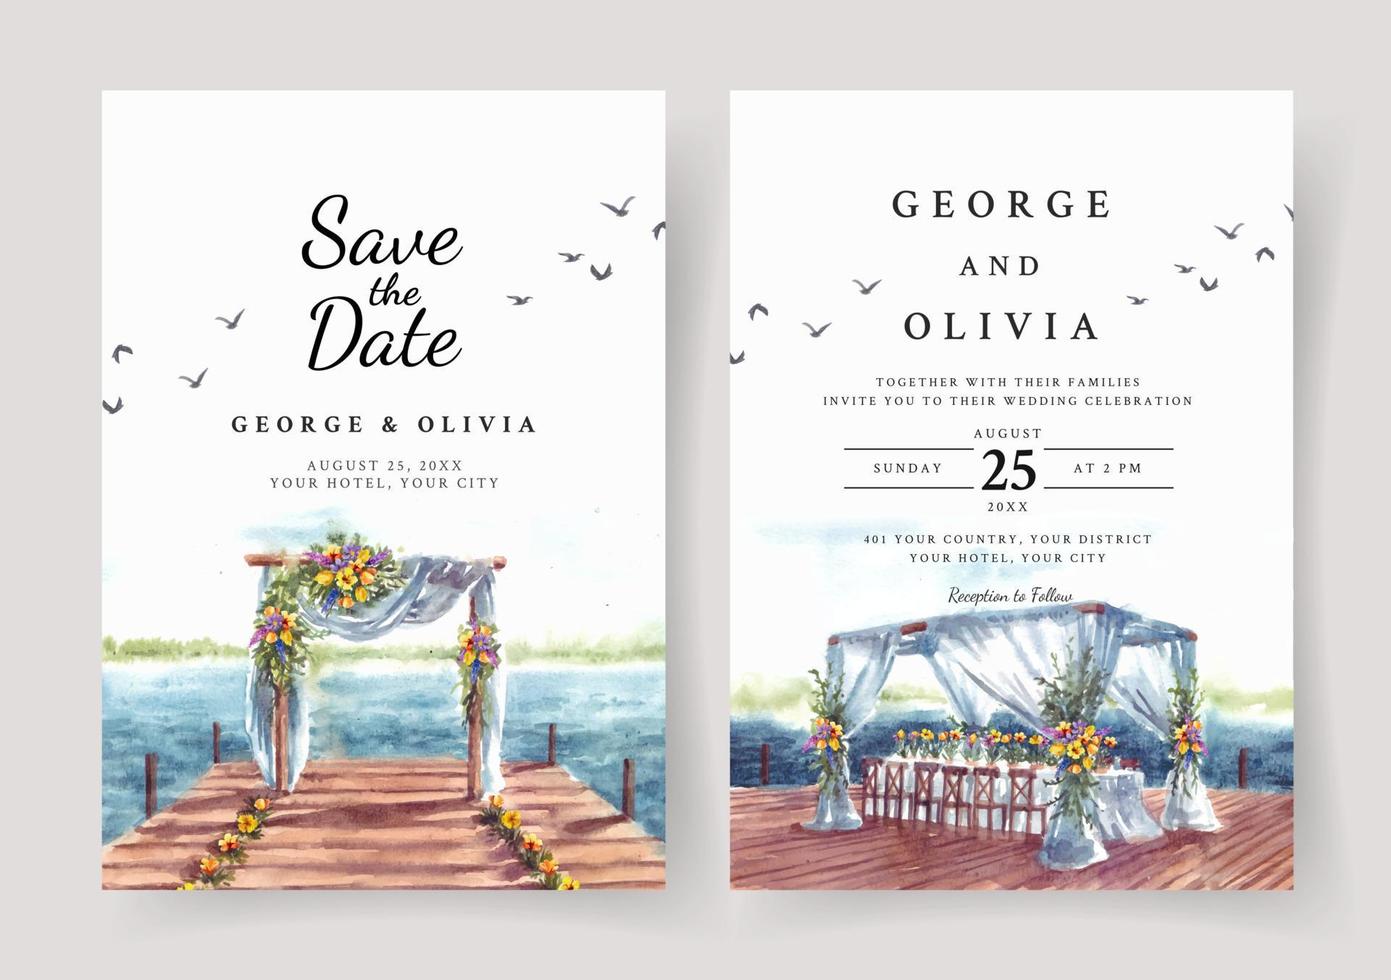 bröllopsinbjudan av naturlandskap med bröllopsport på bryggan och sjöutsikt akvarell vektor